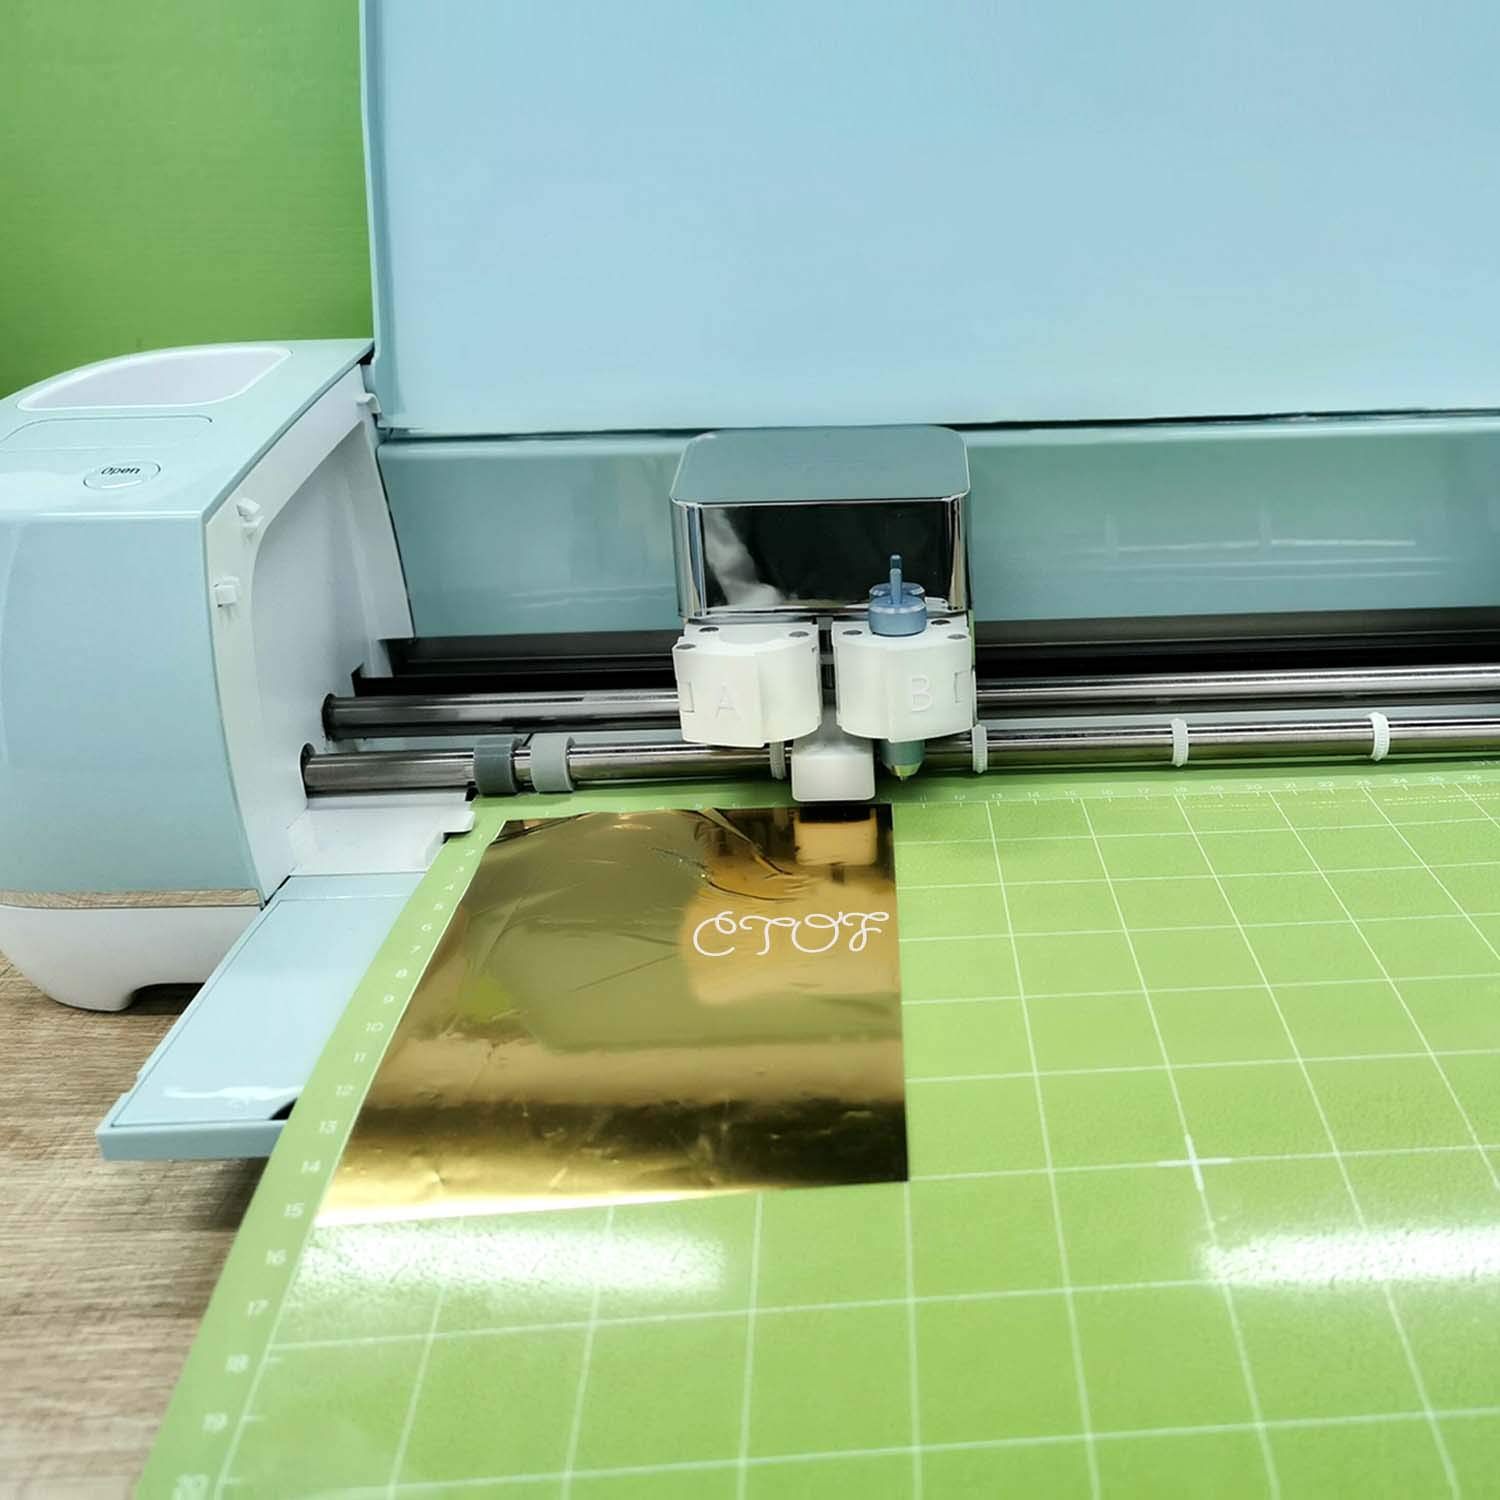 Cricut Explore Air 2 - A DIY Cutting Machine for all Crafts